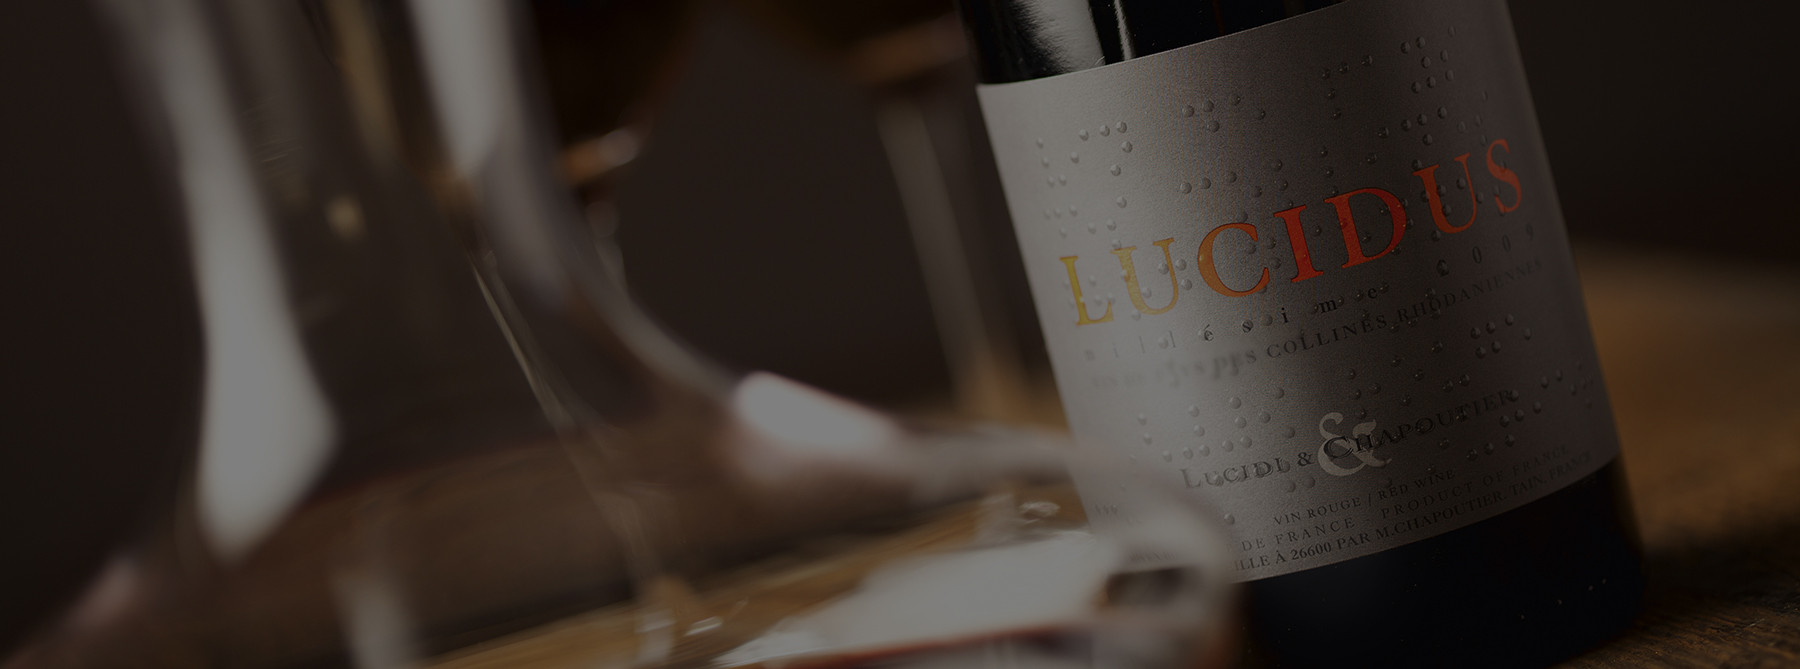 Le vin Lucidus en train d'être carafé. 